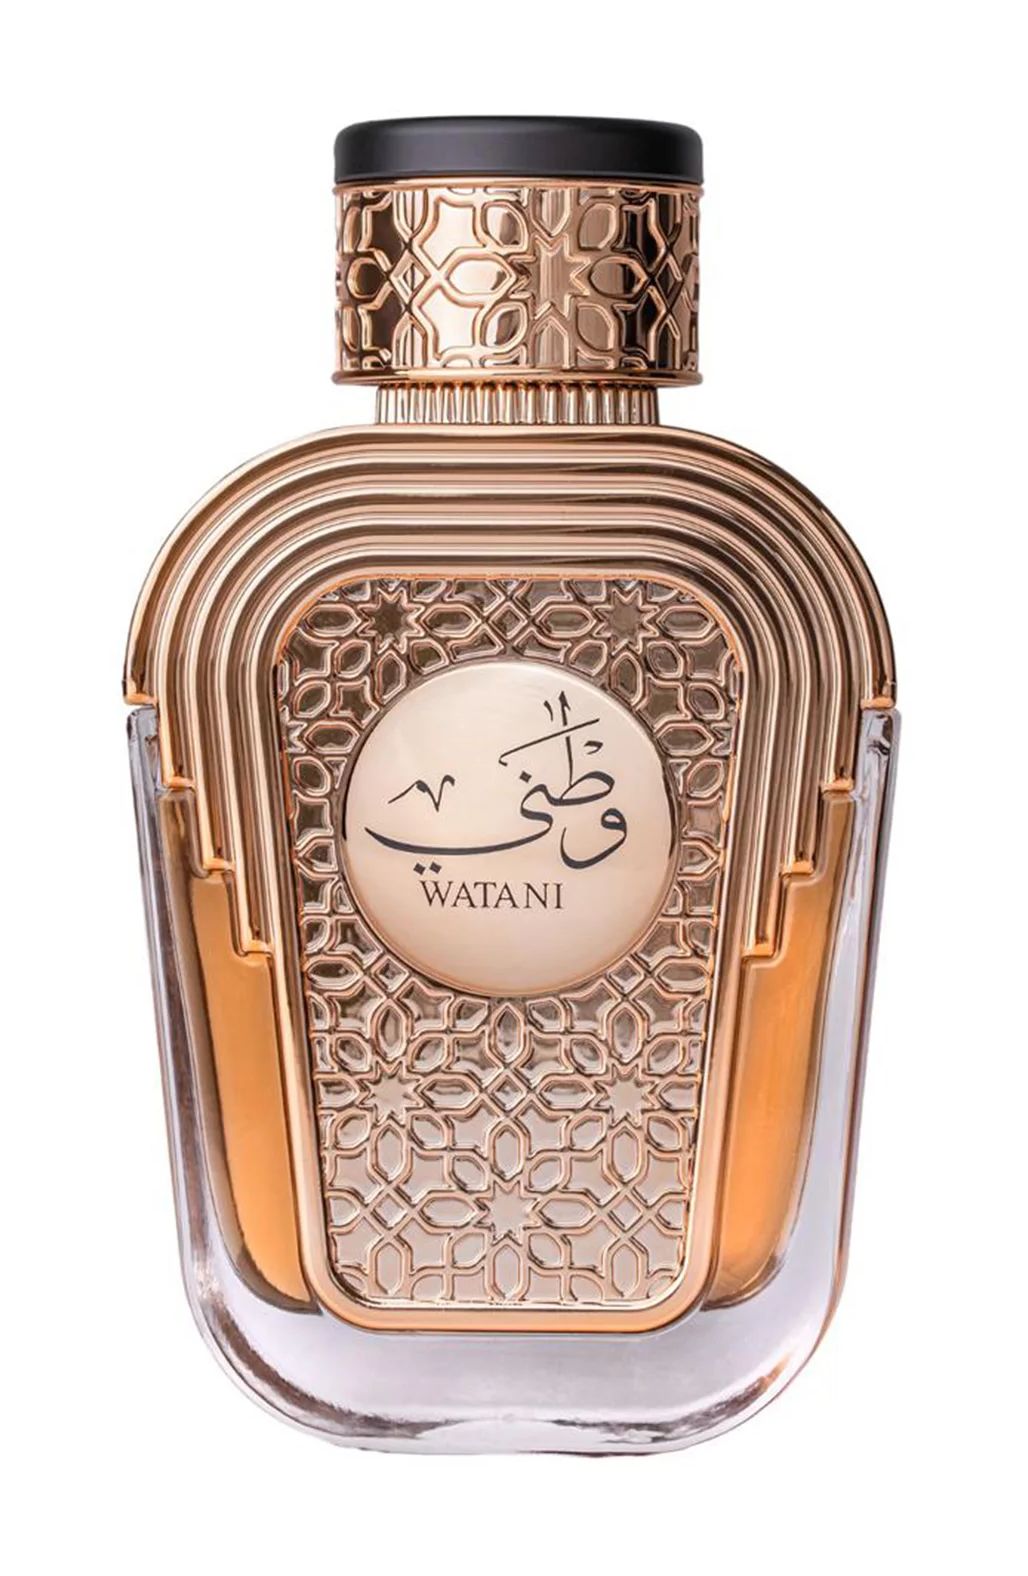 Al Wataniah Watani Feminino Eau de Parfum 100ml - imagem 1